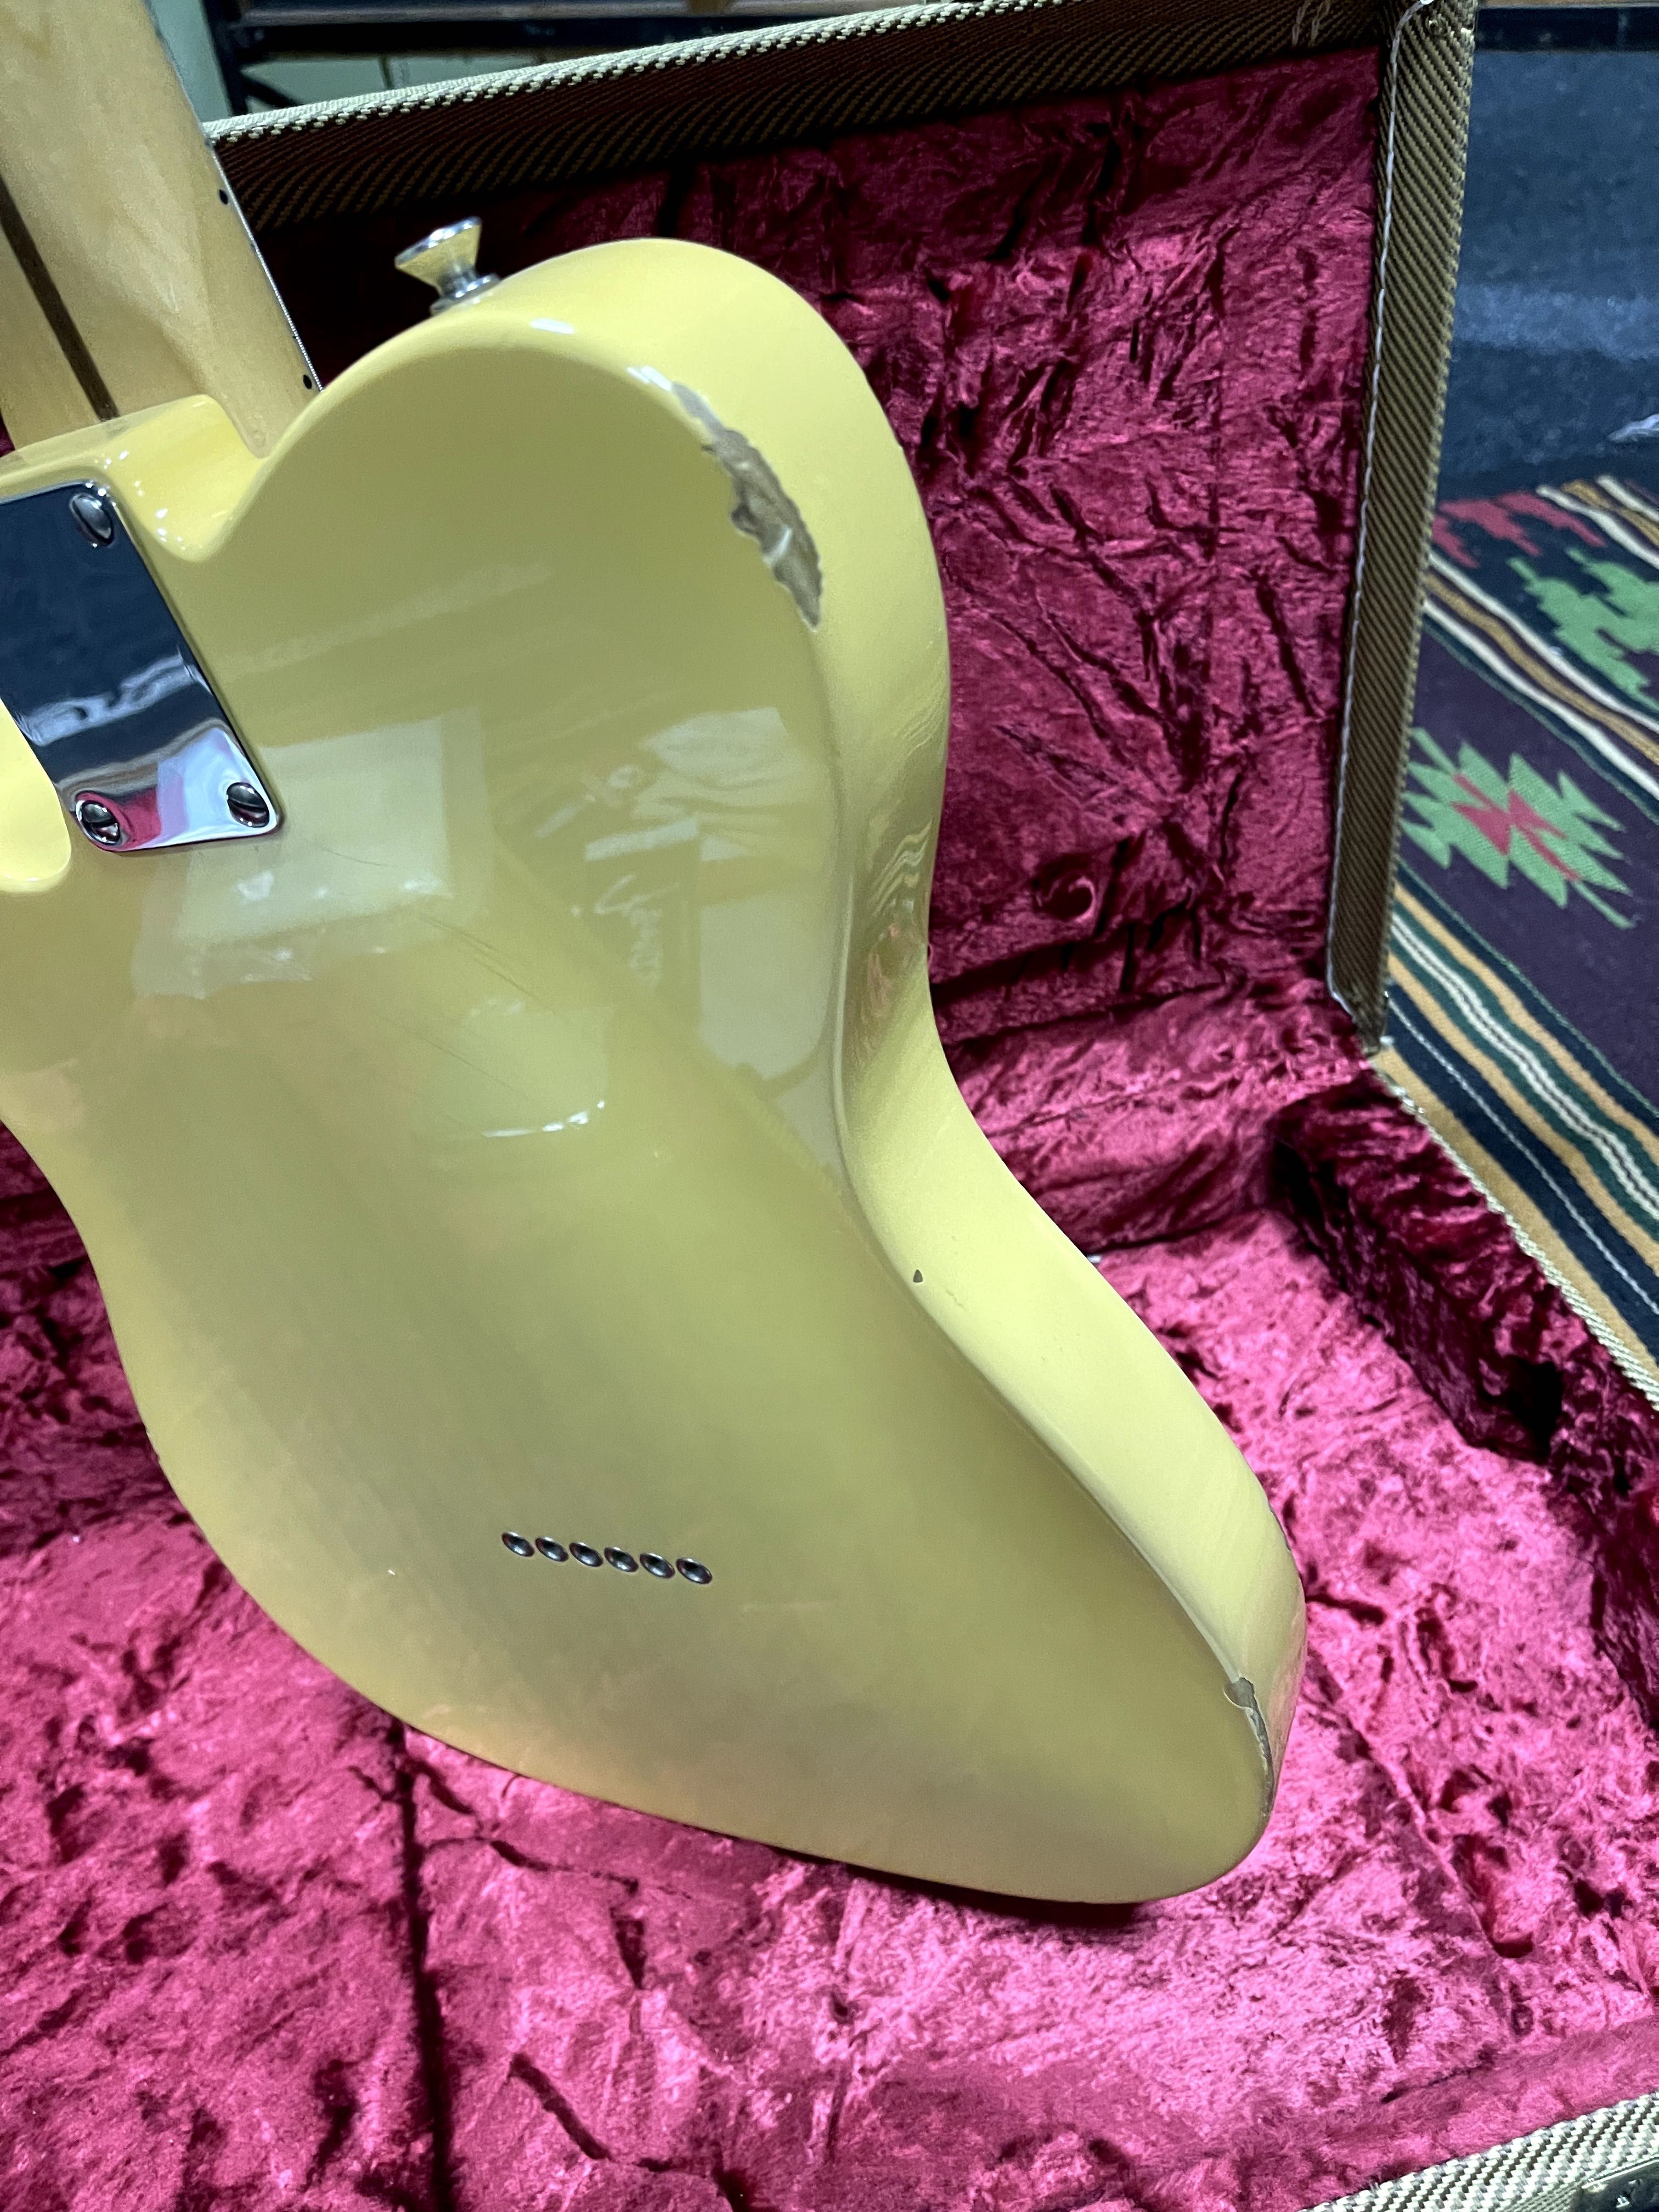 Fender AVRI 52 Telecaster 2017